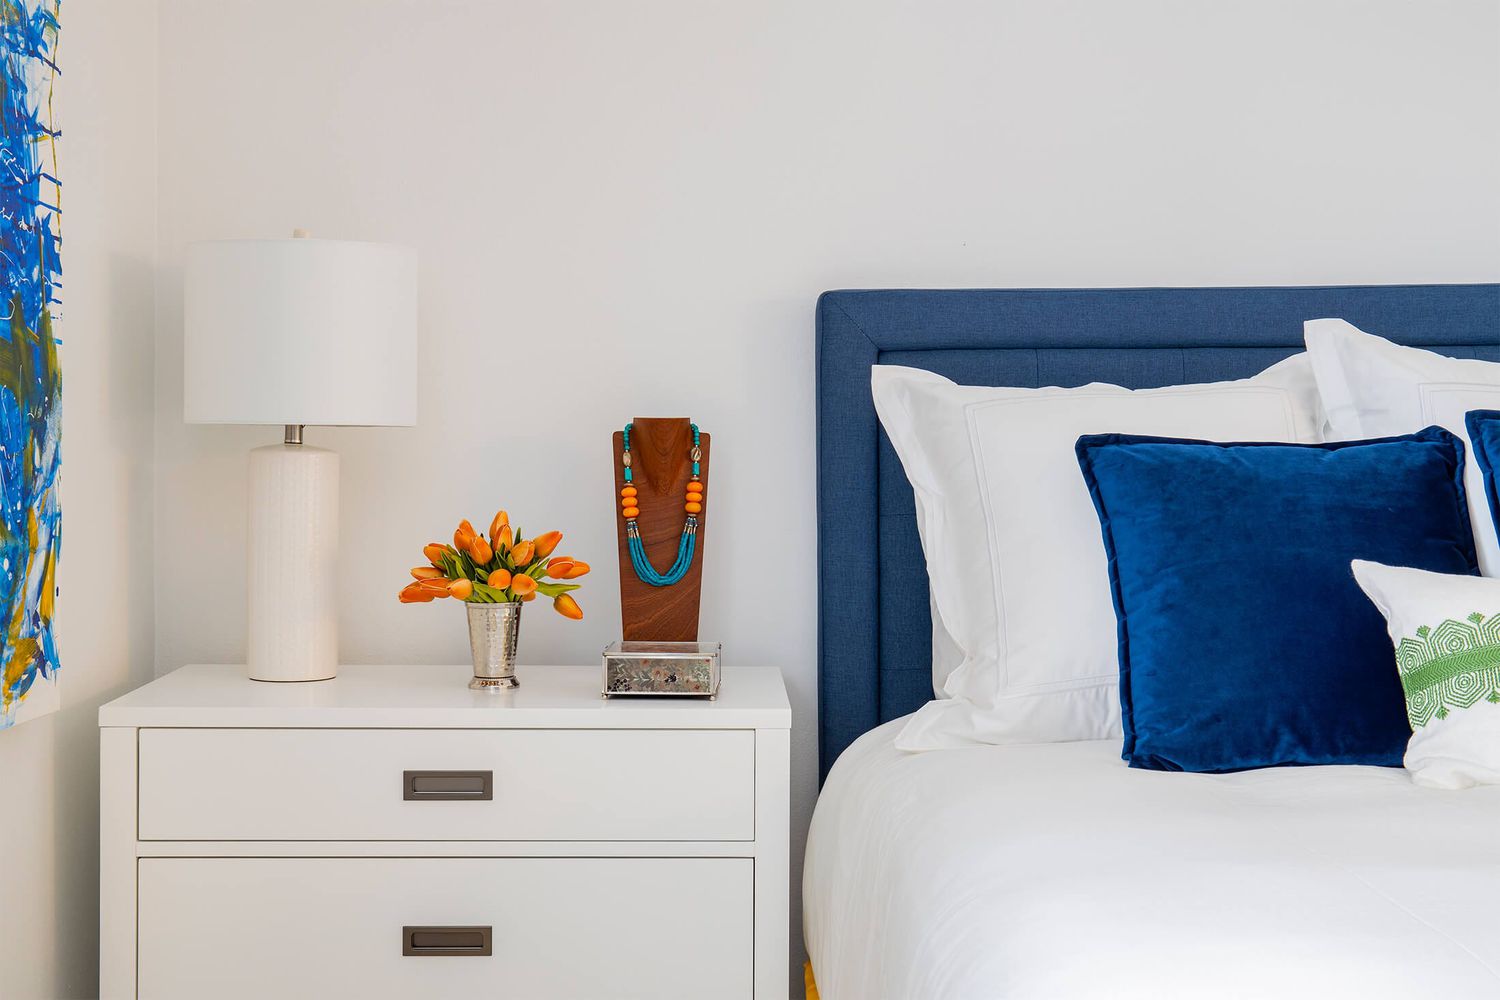 Blaues und weißes Schlafzimmer, kleiner Strauß oder orangefarbene Blumen auf dem Nachttisch